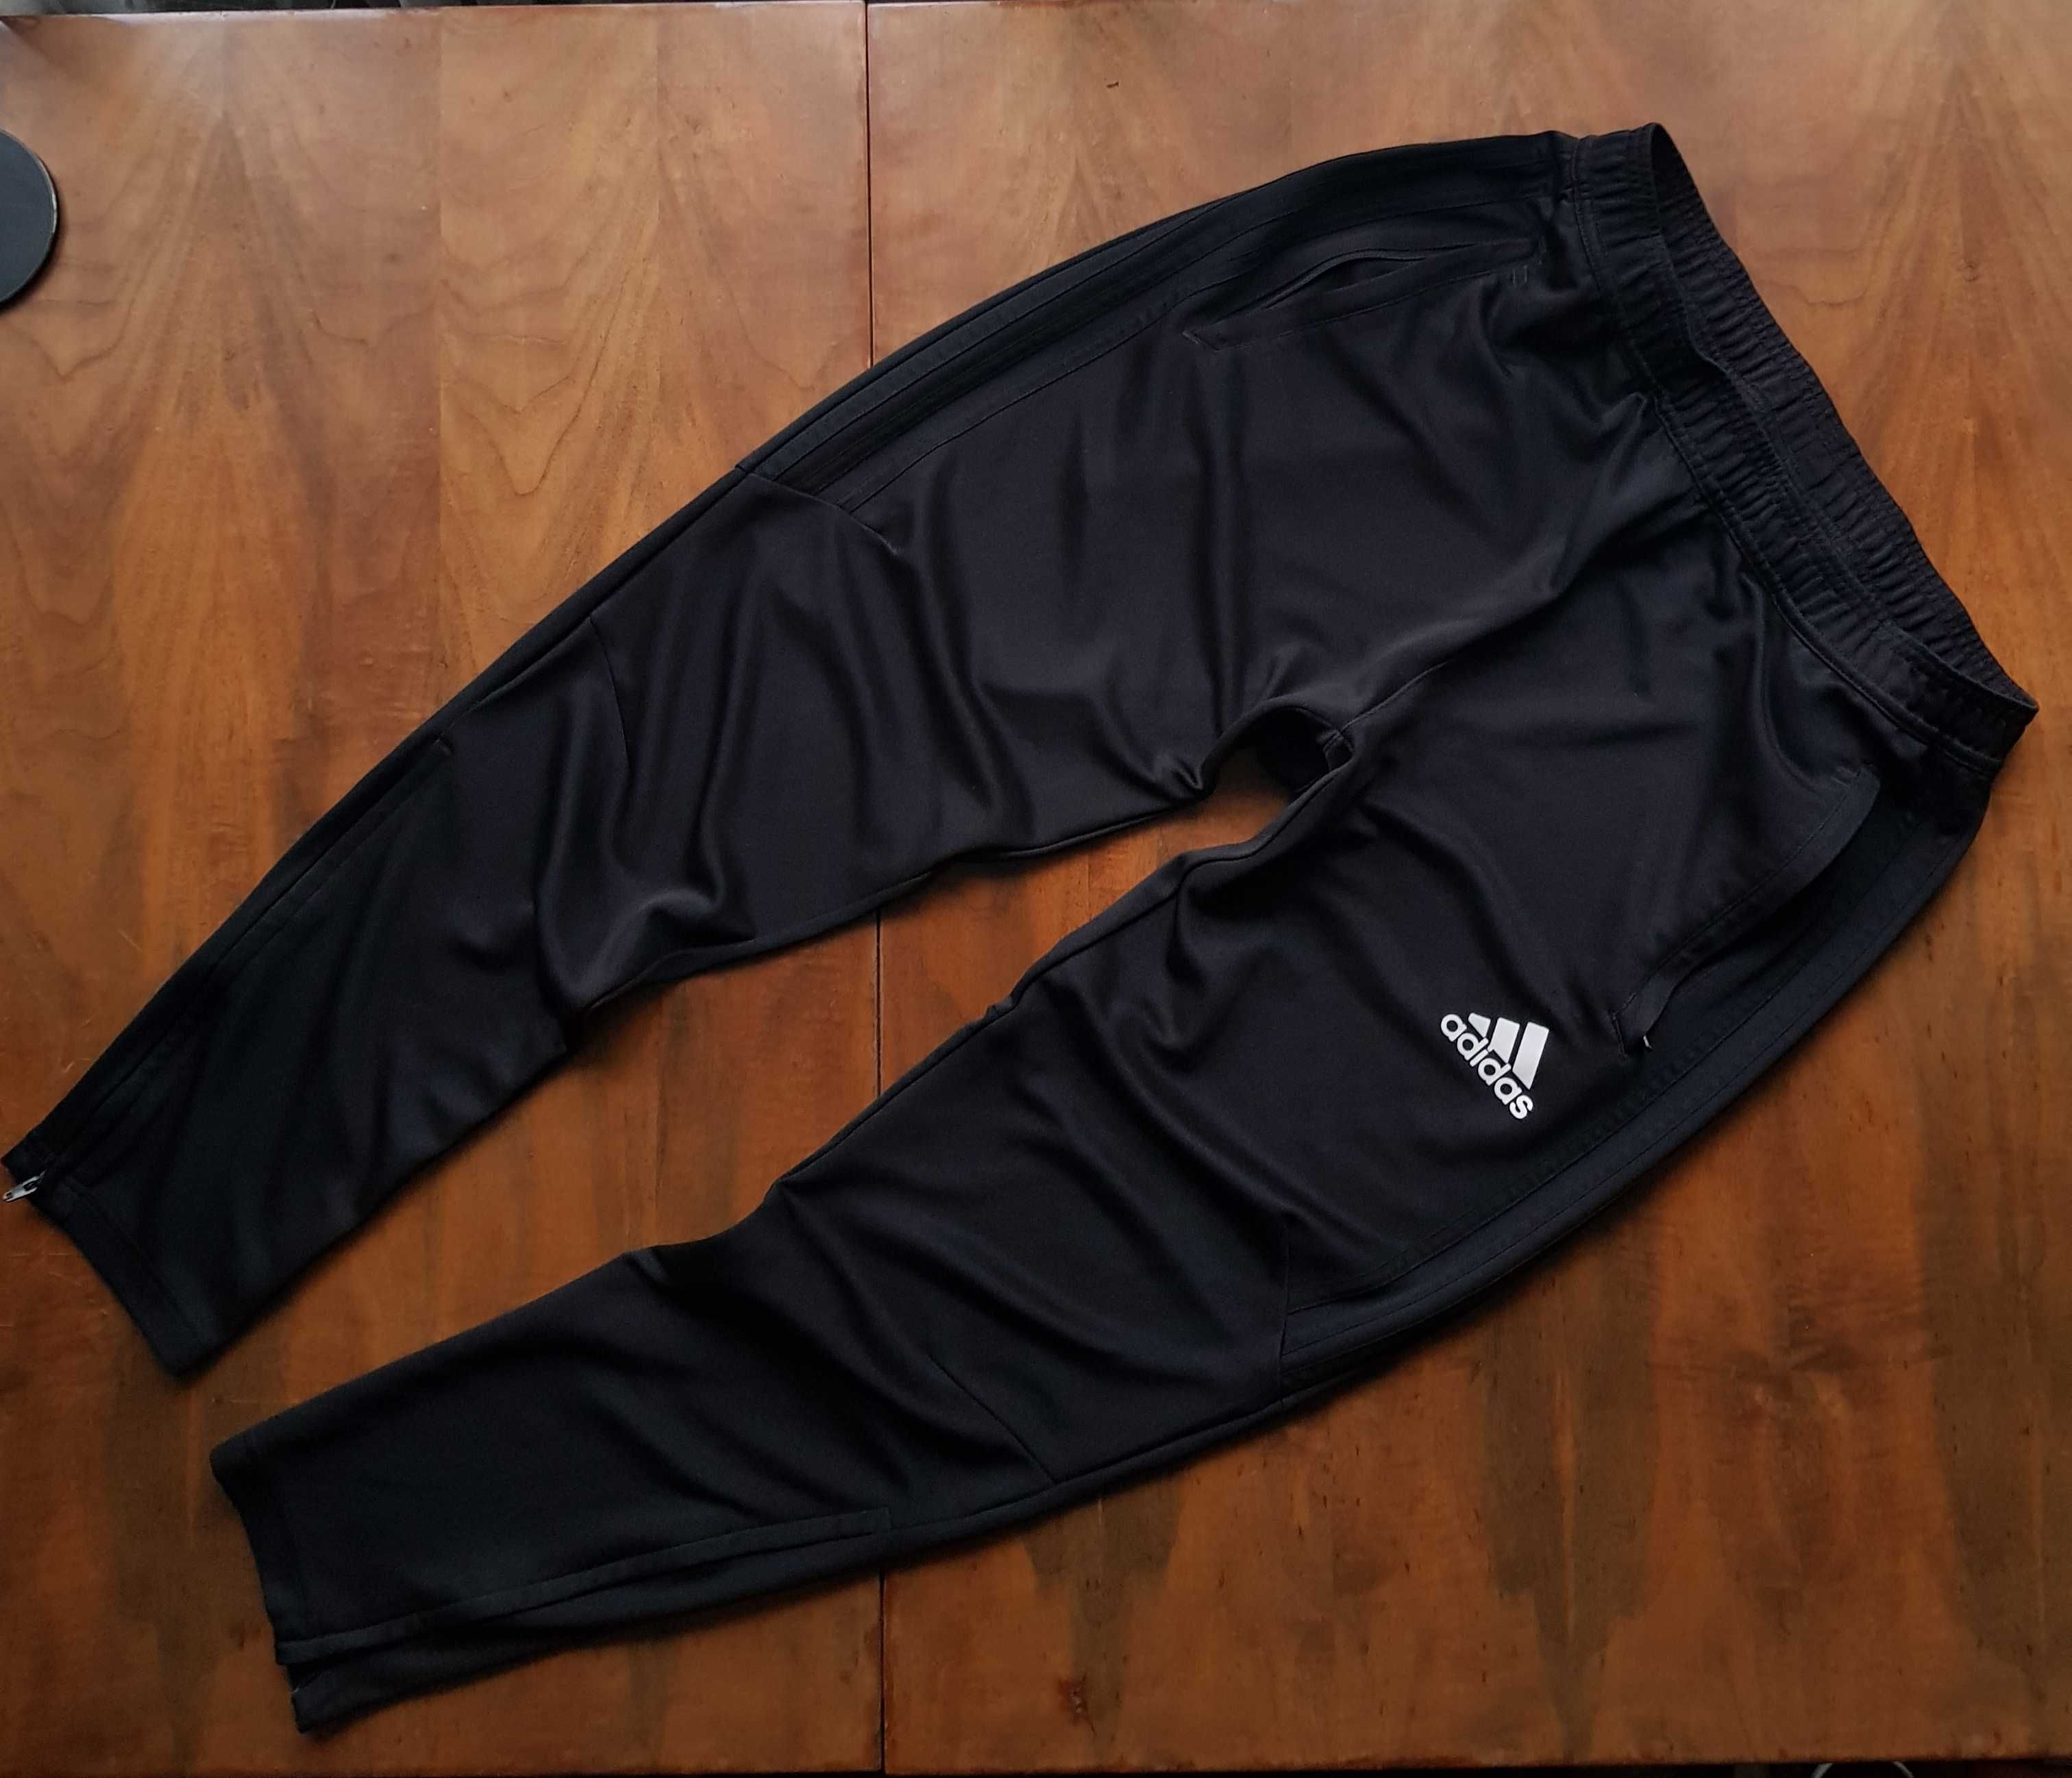 Спортивные штаны (Adidas) Climacool .размер М.